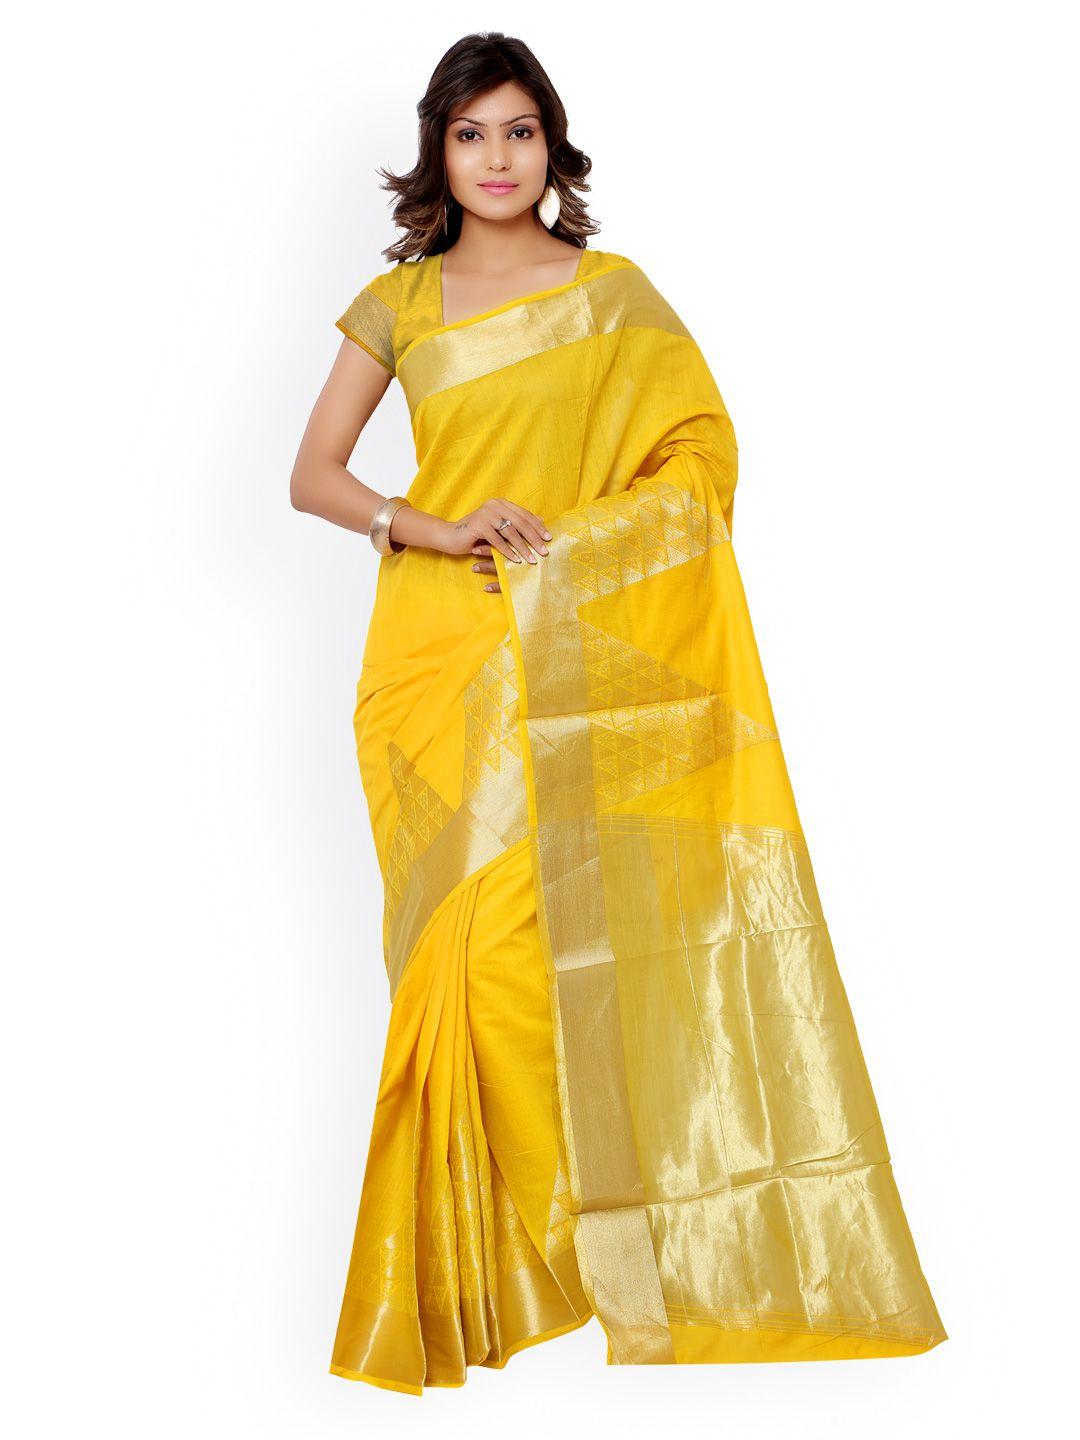 varkala silk sarees yellow banarasi cotton silk & jacquard traditional saree